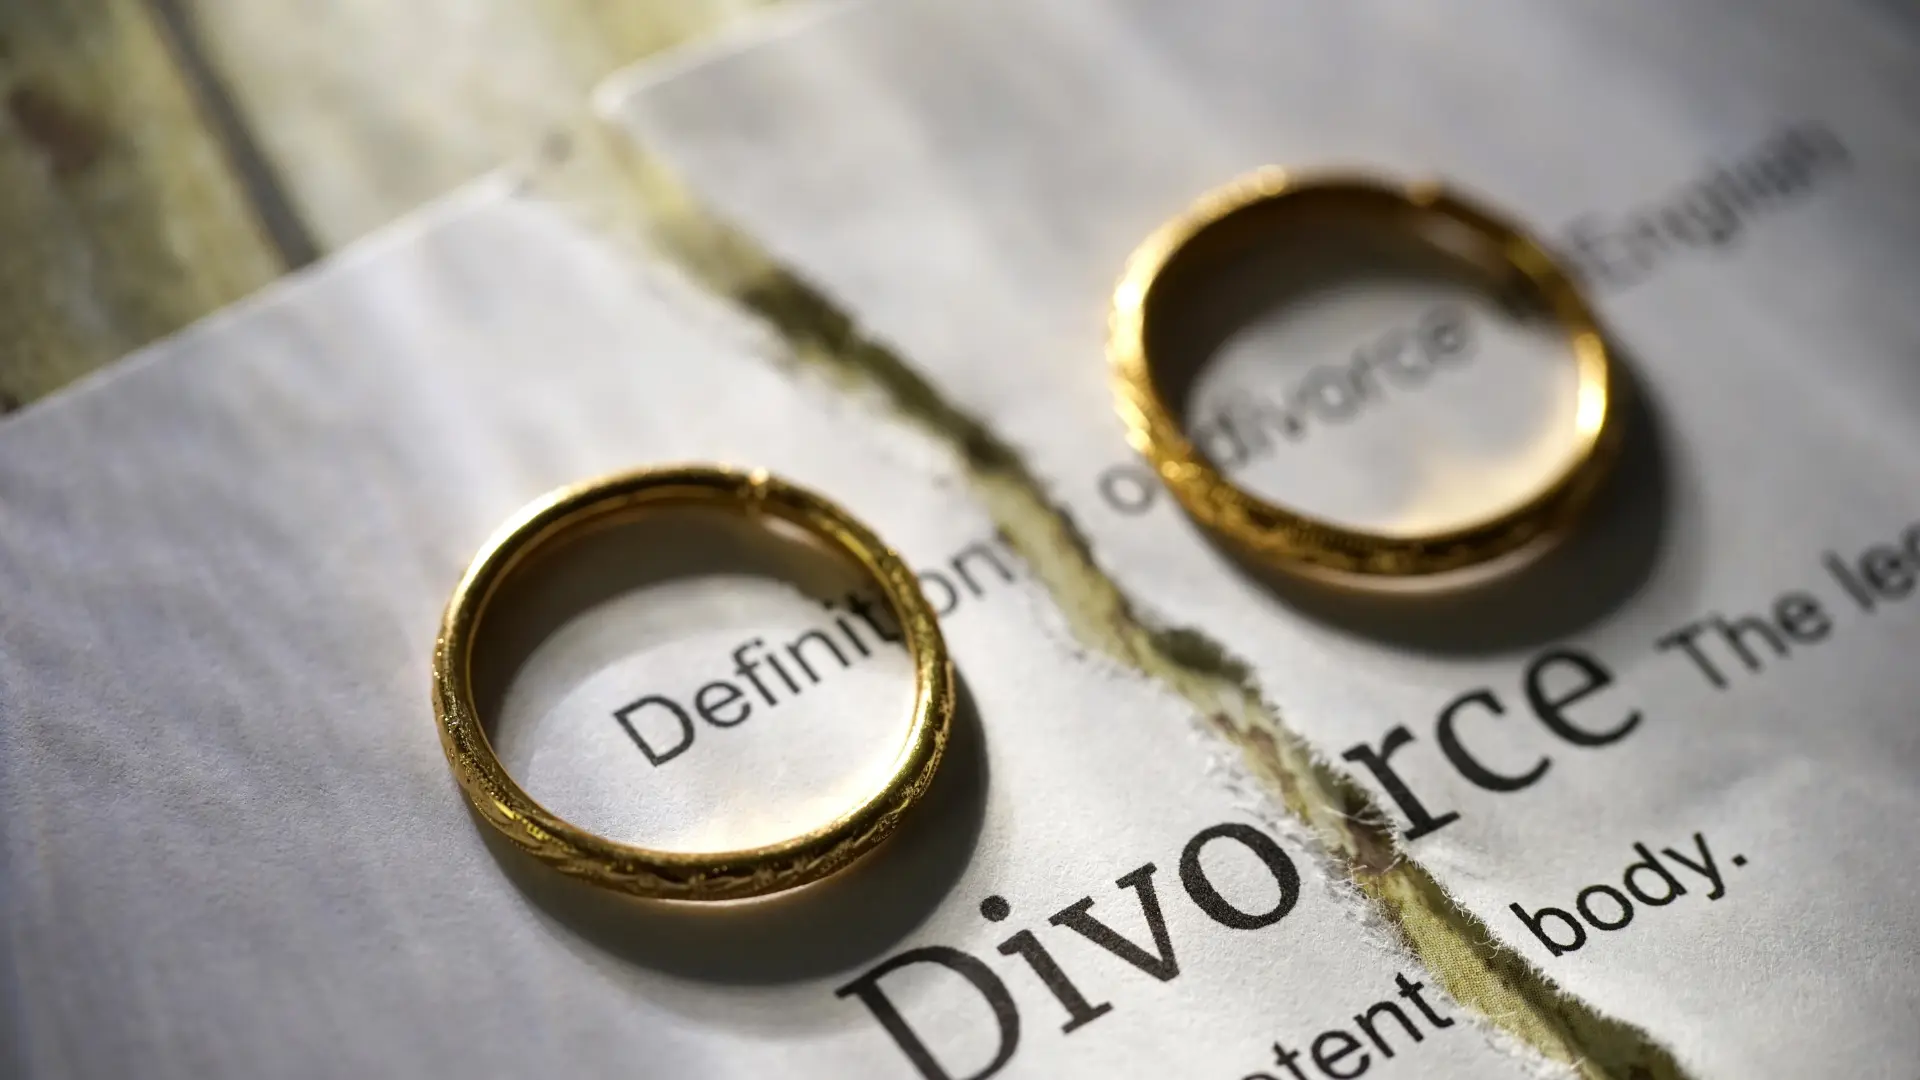 Divorce Decree Invalid